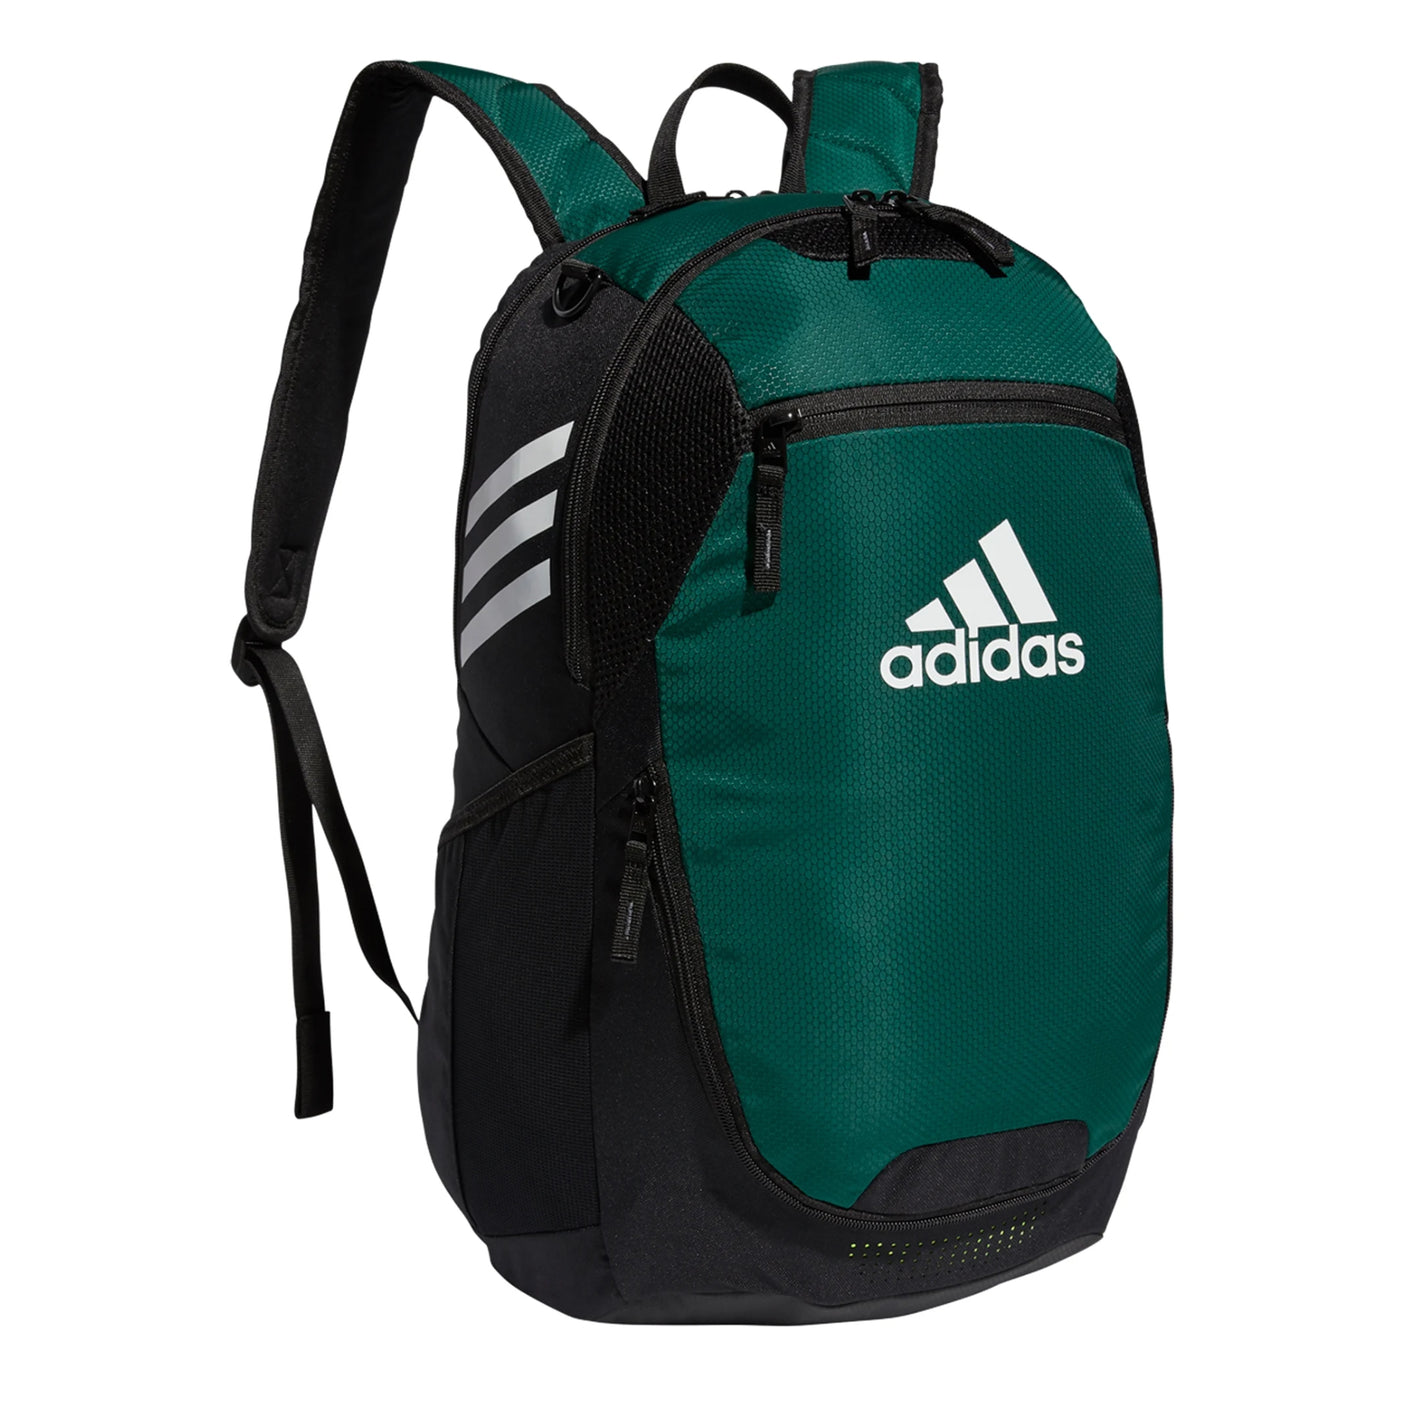 adidas Stadium III Backpack Green/Black Side